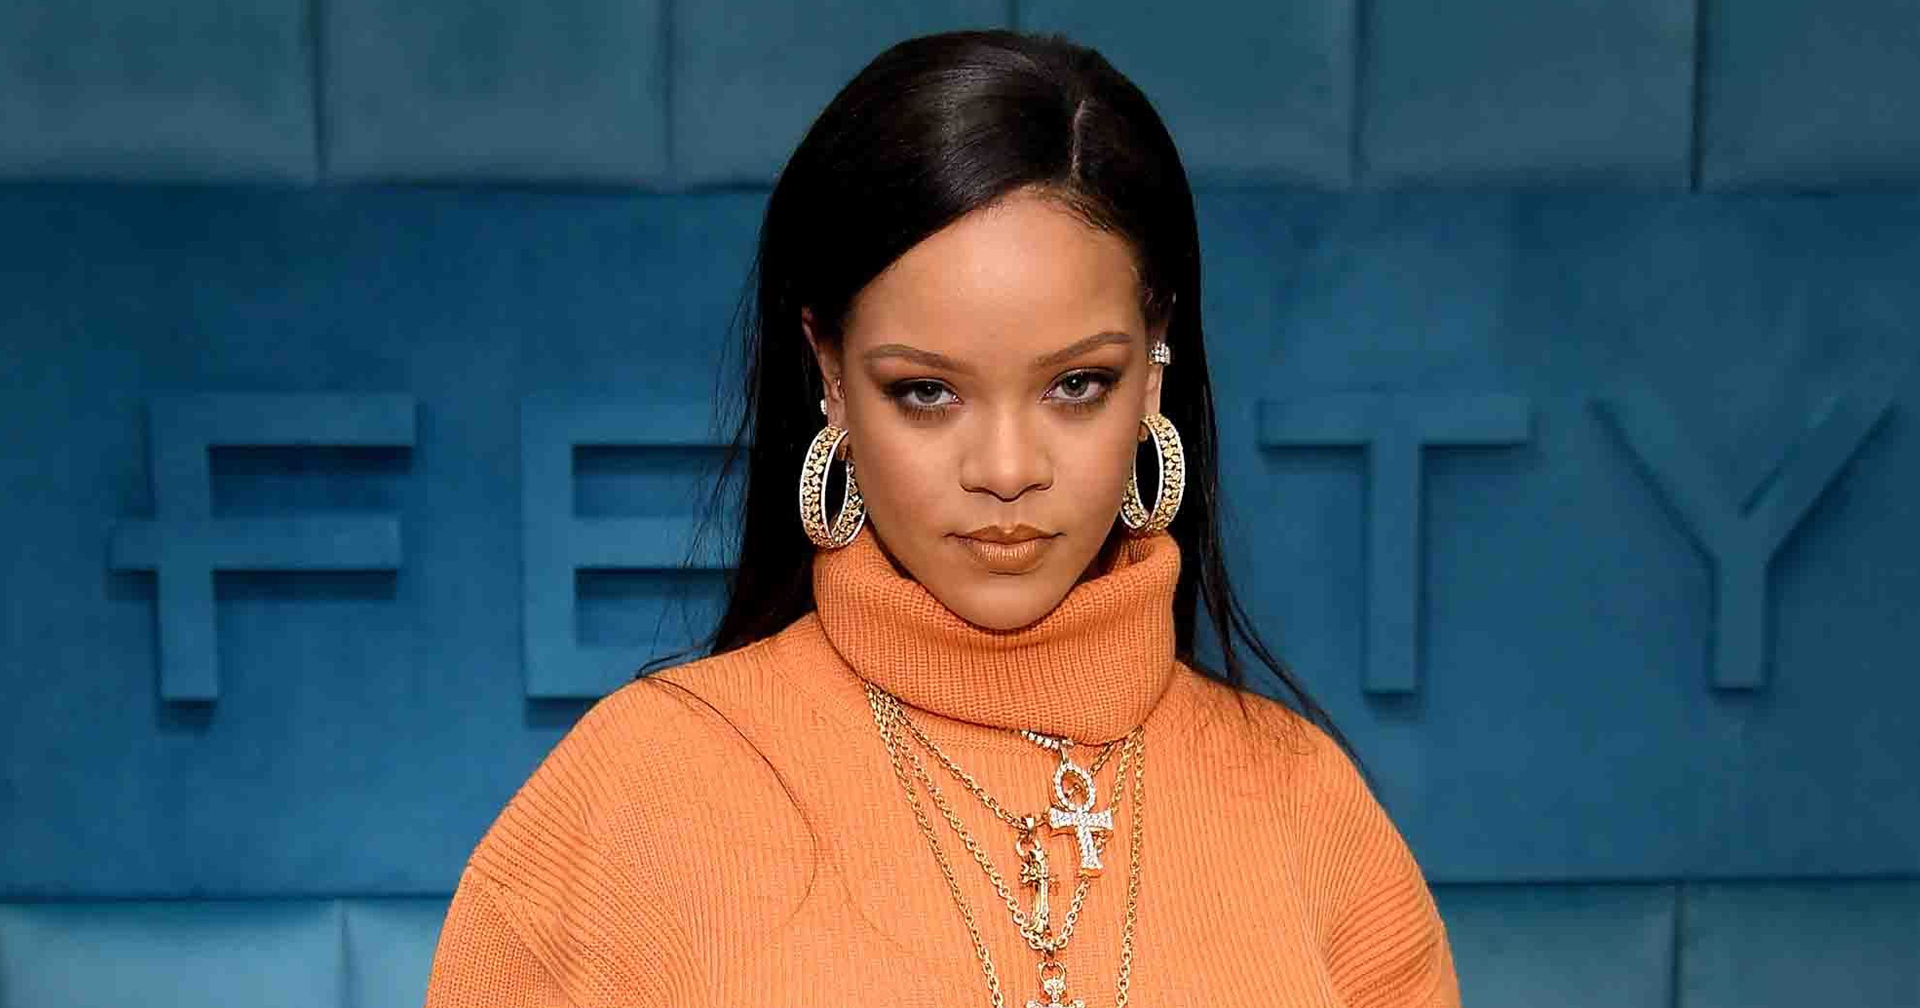 Rihanna ขึ้นแท่นศิลปินหญิงที่รวยที่สุดในโลก โดยรายได้เกือบทั้งหมดมาจากธุรกิจเครื่องสำอาง